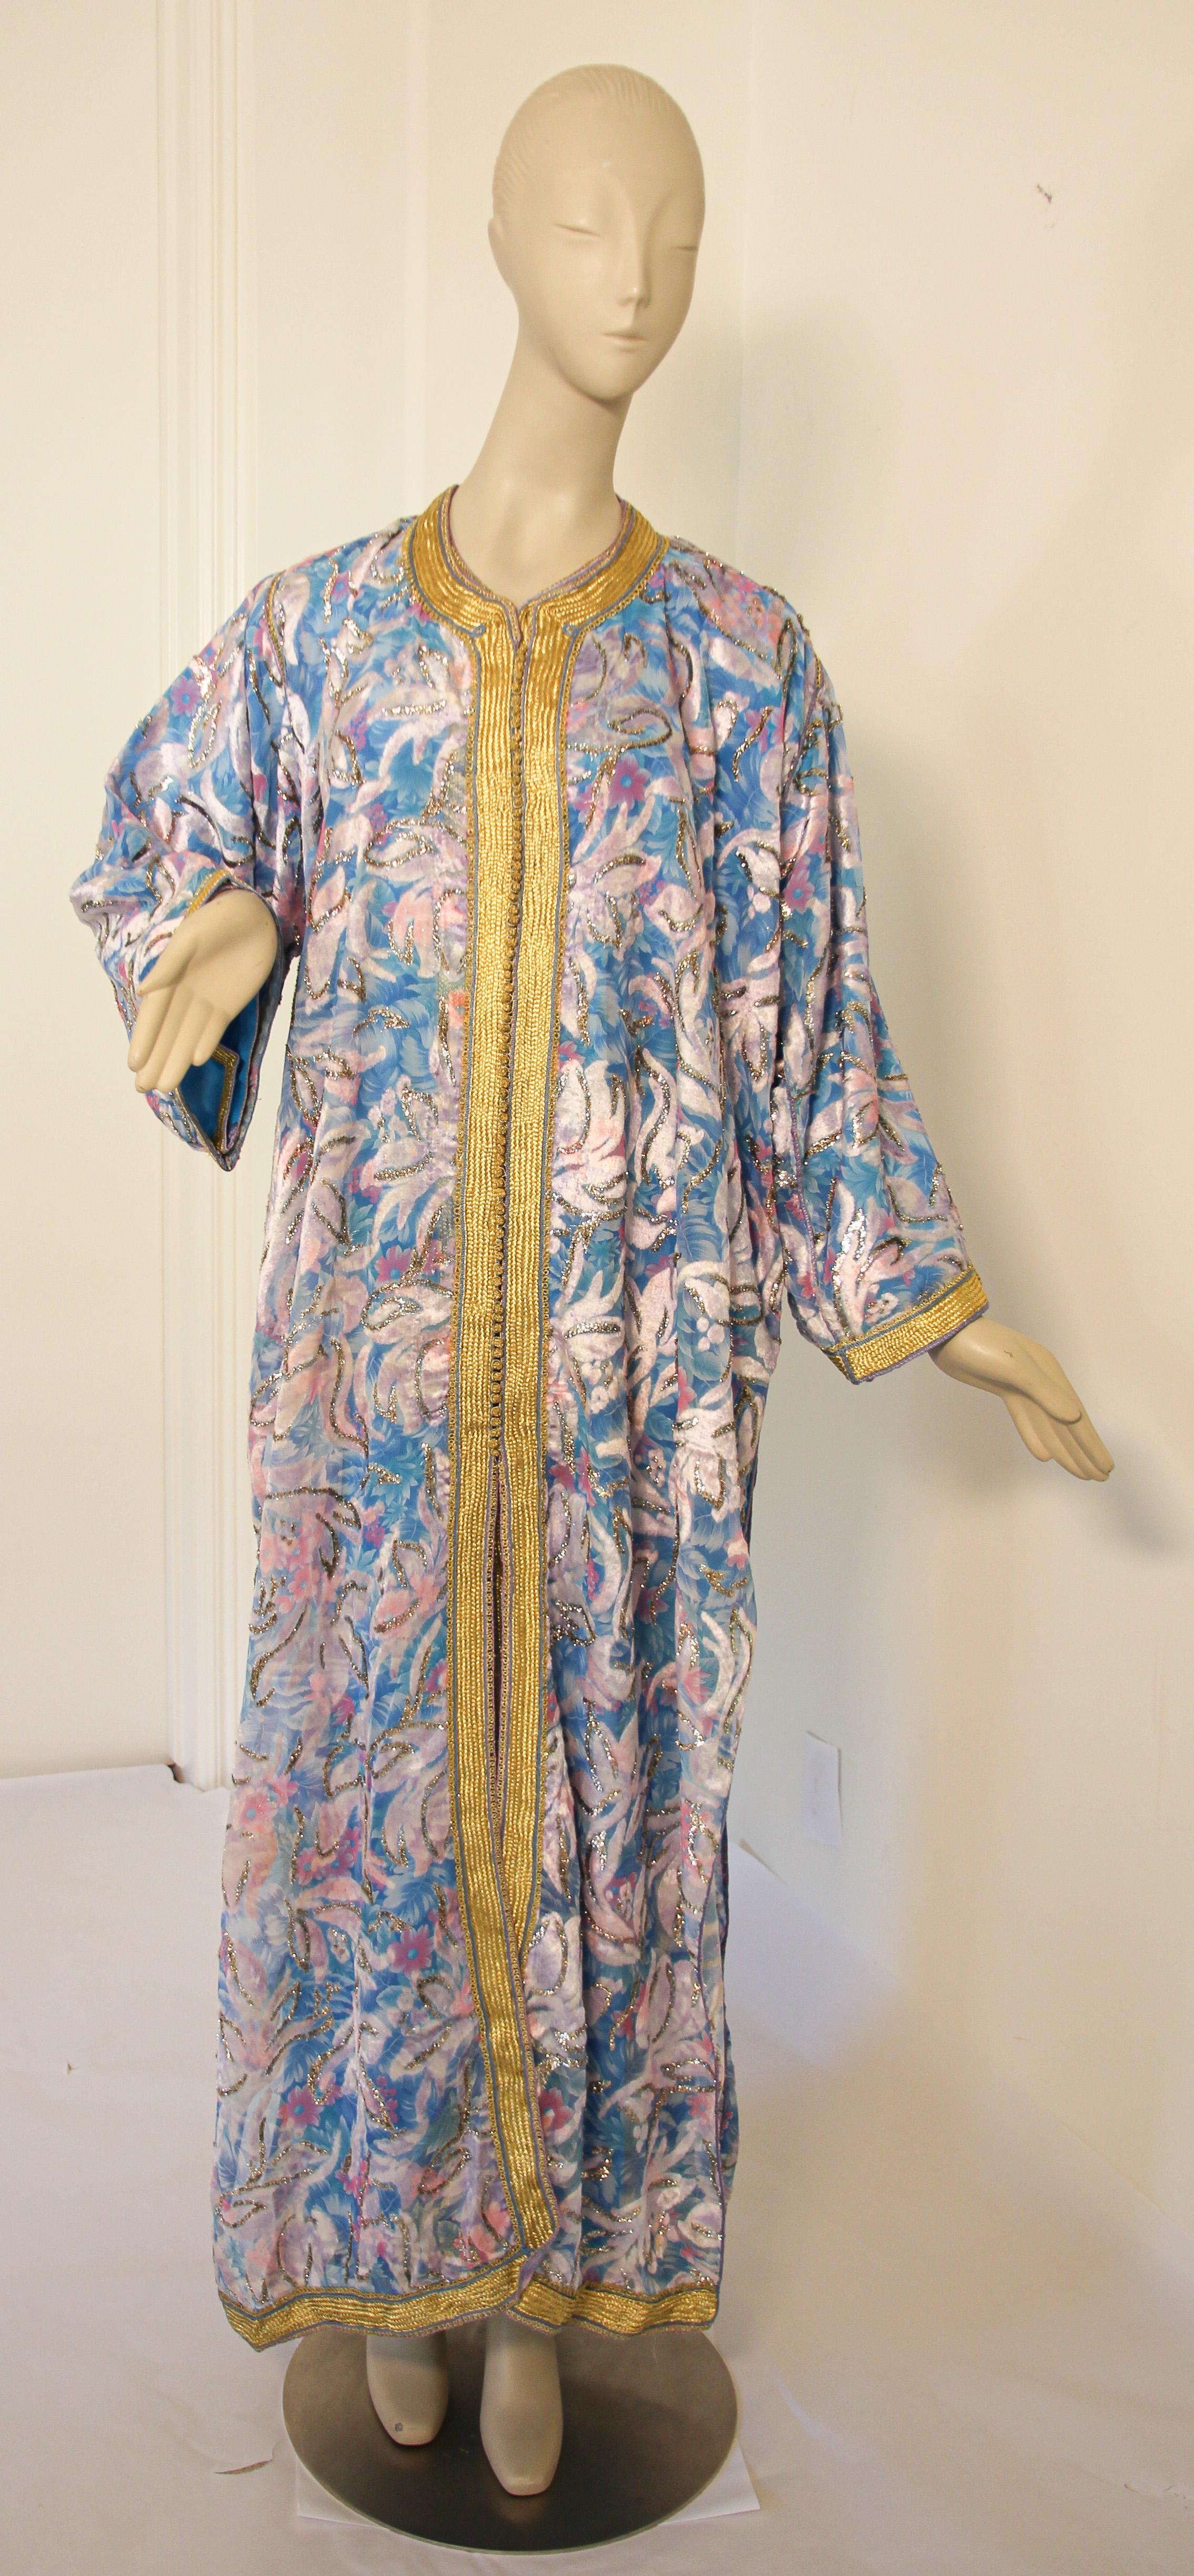 Elegant caftan marocain en turquoise et or floral lame métallique et garniture brodée,
vers les années 1970.
Cette longue robe maxi kaftan est brodée et embellie entièrement à la main.
Il est confectionné au Maroc et conçu pour une coupe